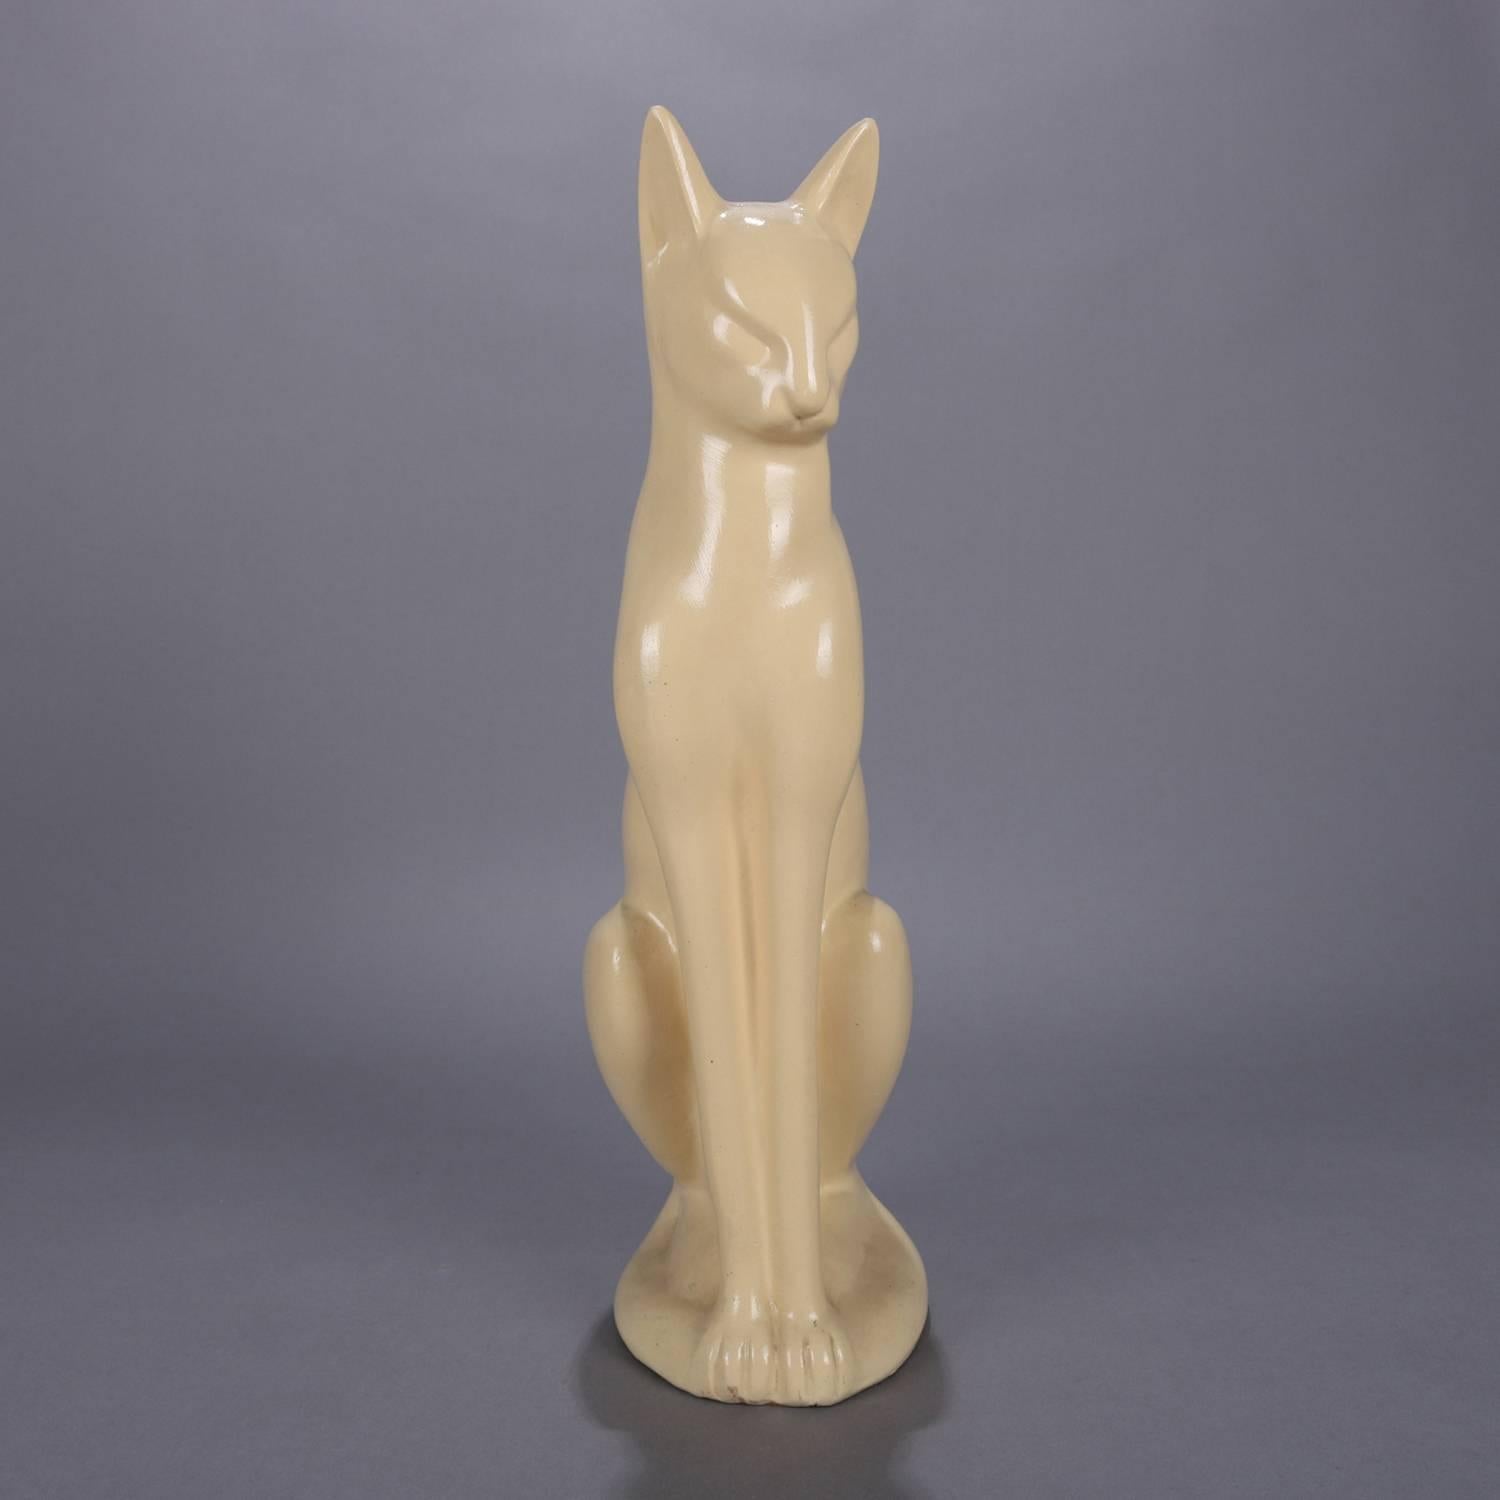 Large Art Deco figural ceramic sculpture of seated Siamese cat in cream glaze, circa 1930.

Measures: 18